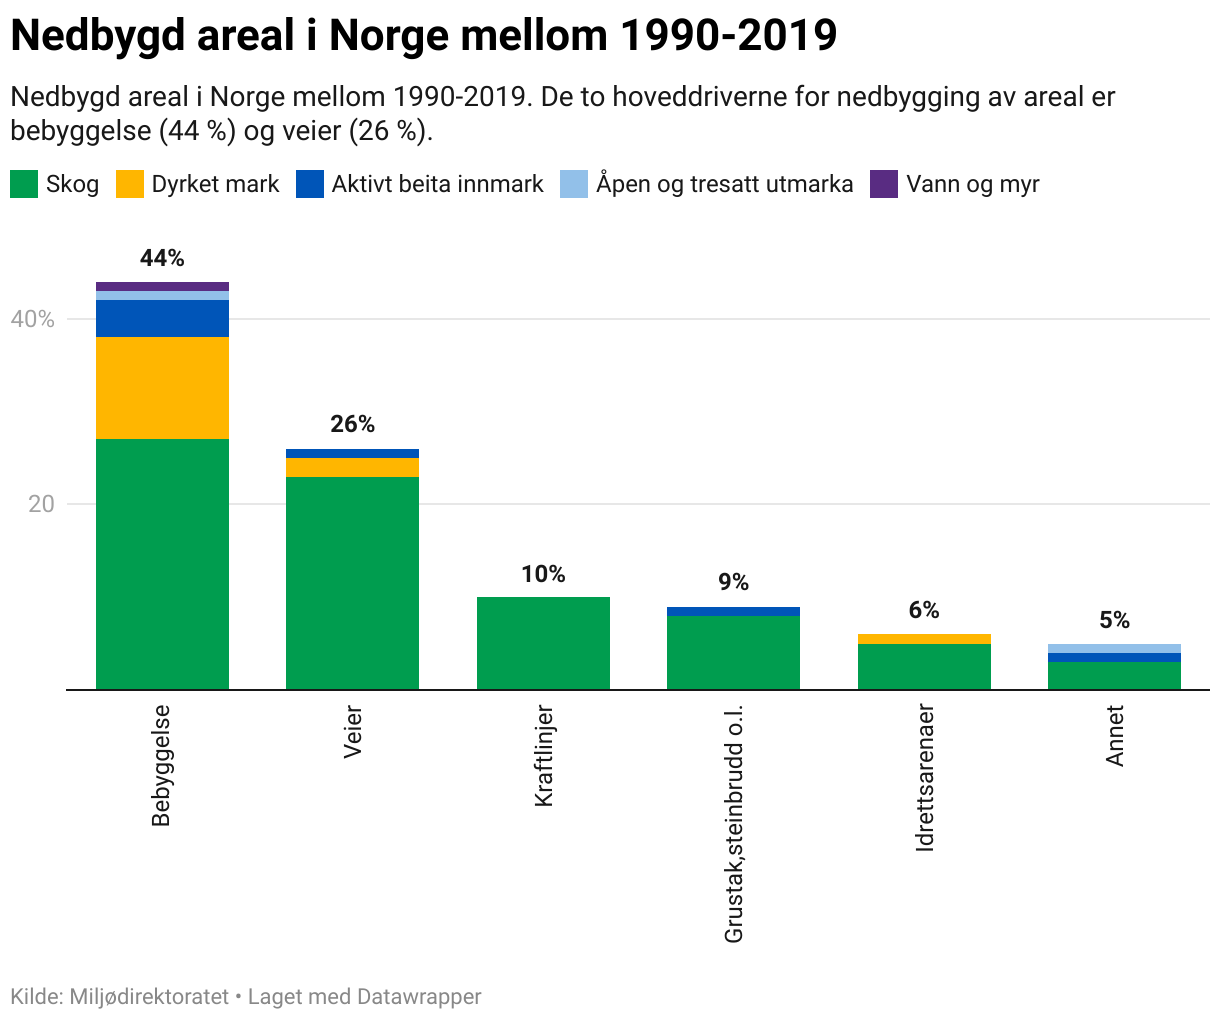 Nedbygd areal i Norge mellom 1990-2019. De to hoveddriverne for nedbygging av areal er bebyggelse (44 %) og veier (26 %). 